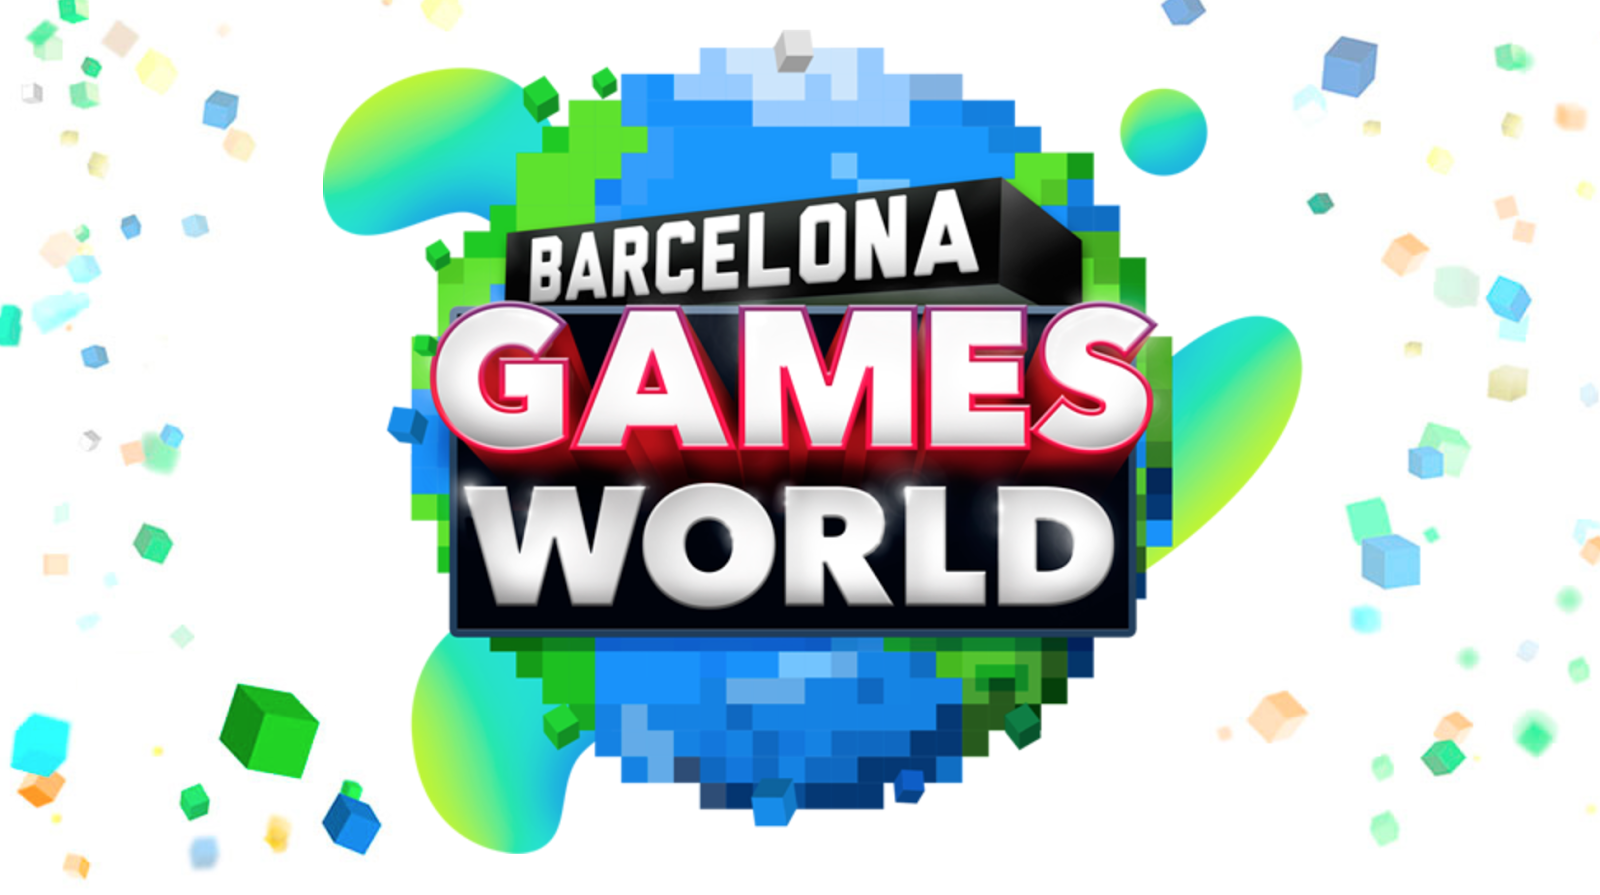 Los mejores momentos de PlayStation España en Barcelona Games World